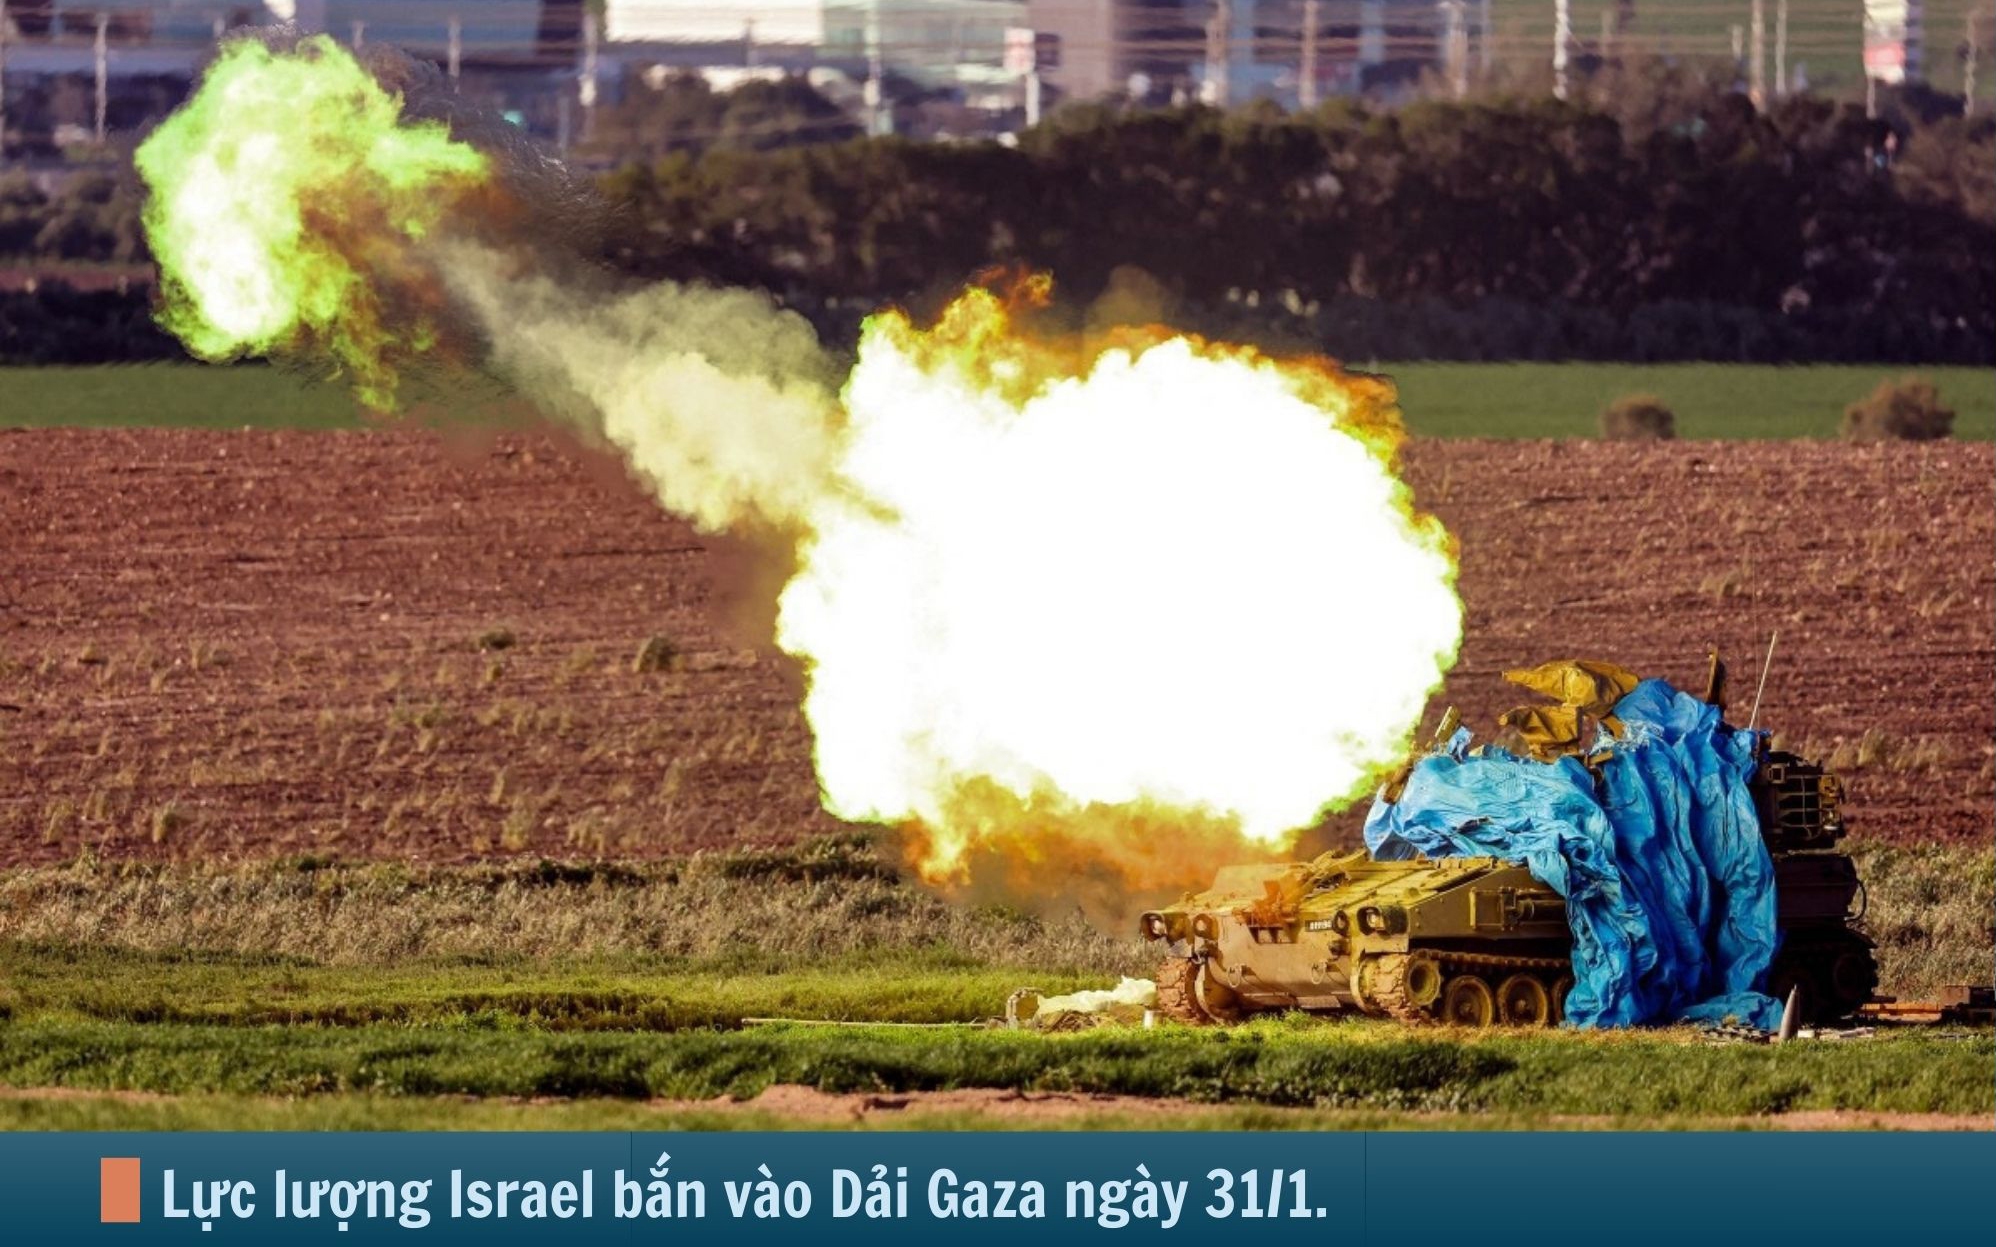 Hình ảnh báo chí 24h: Israel tiếp tục nã đạn vào Dải Gaza và cơ hội ngừng bắn 6 tuần